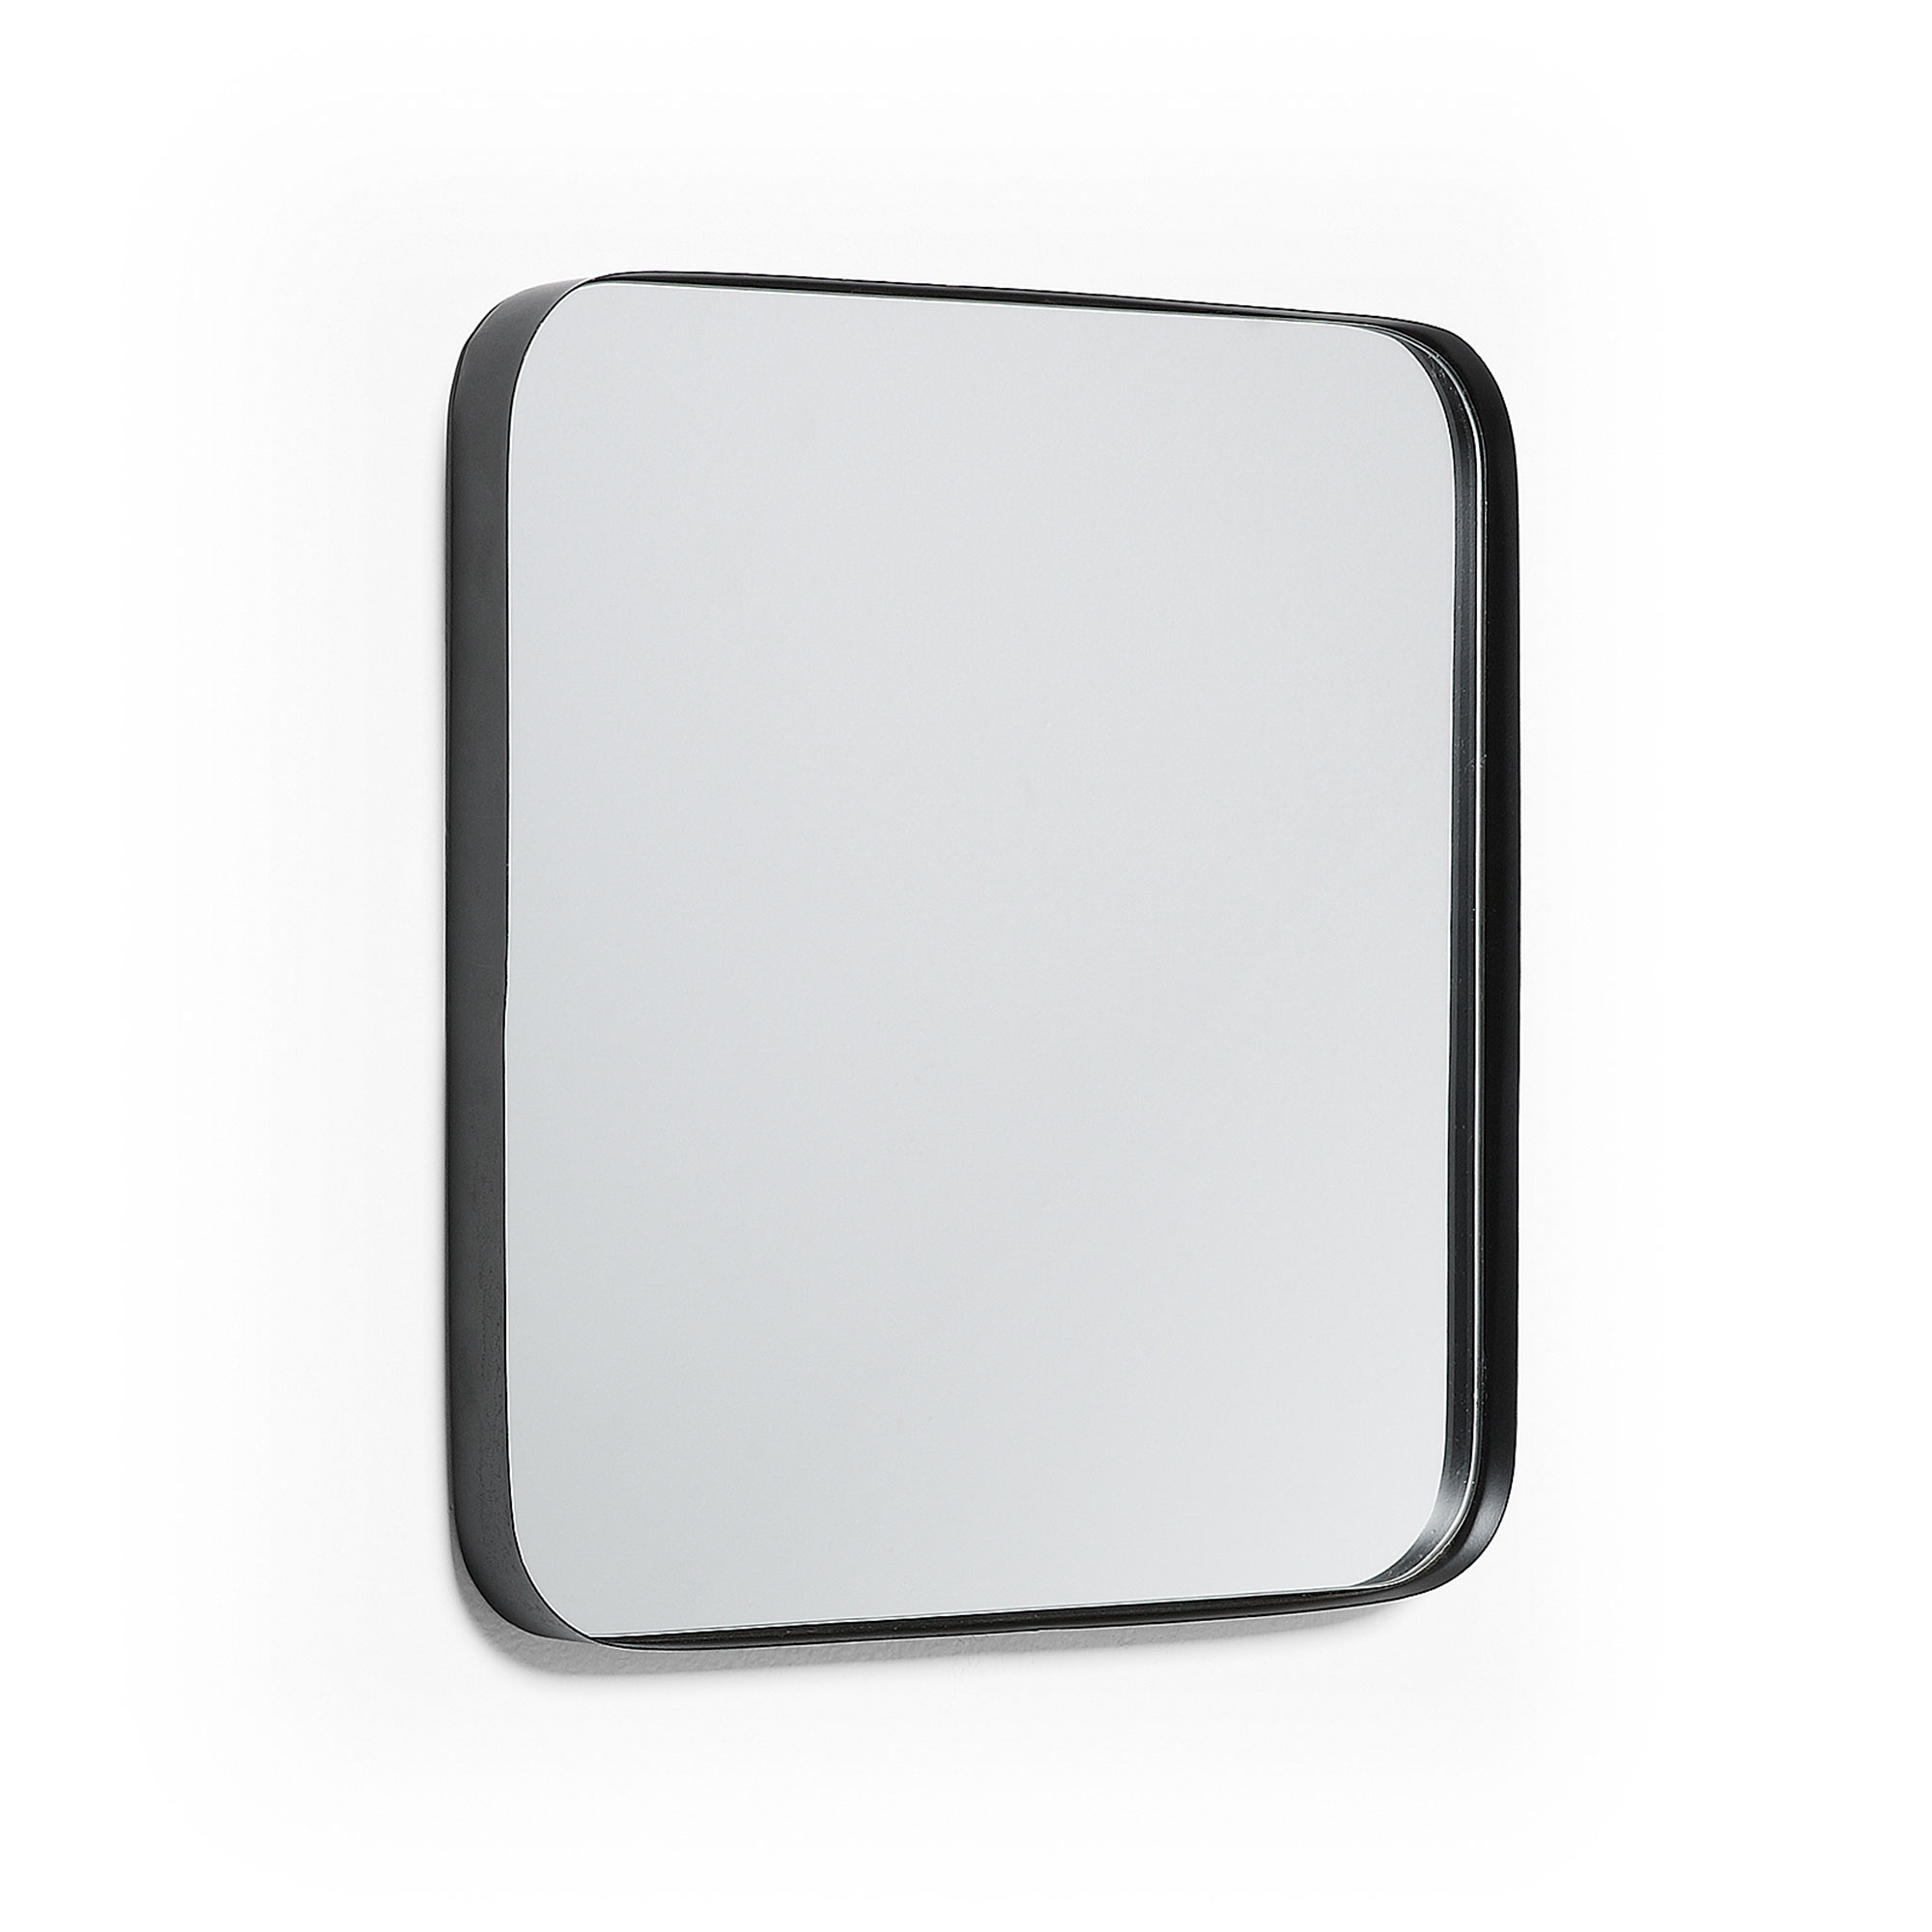 LAFORMA Marco vægspejl, kvadratisk - spejlglas og sort stål (40x40)